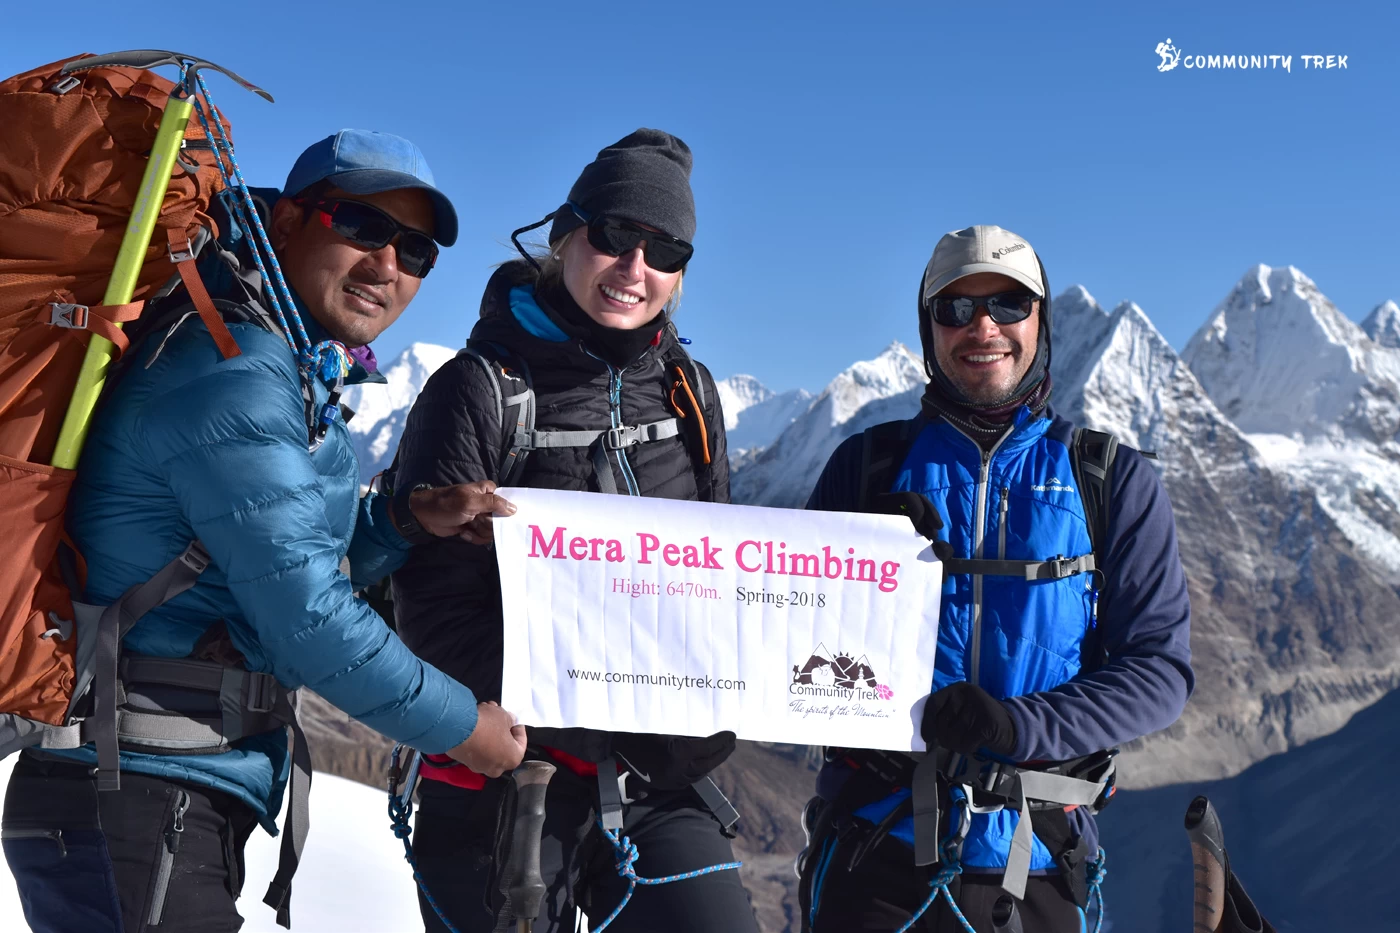 Mera Peak Climbing (6,476m)'s feature image